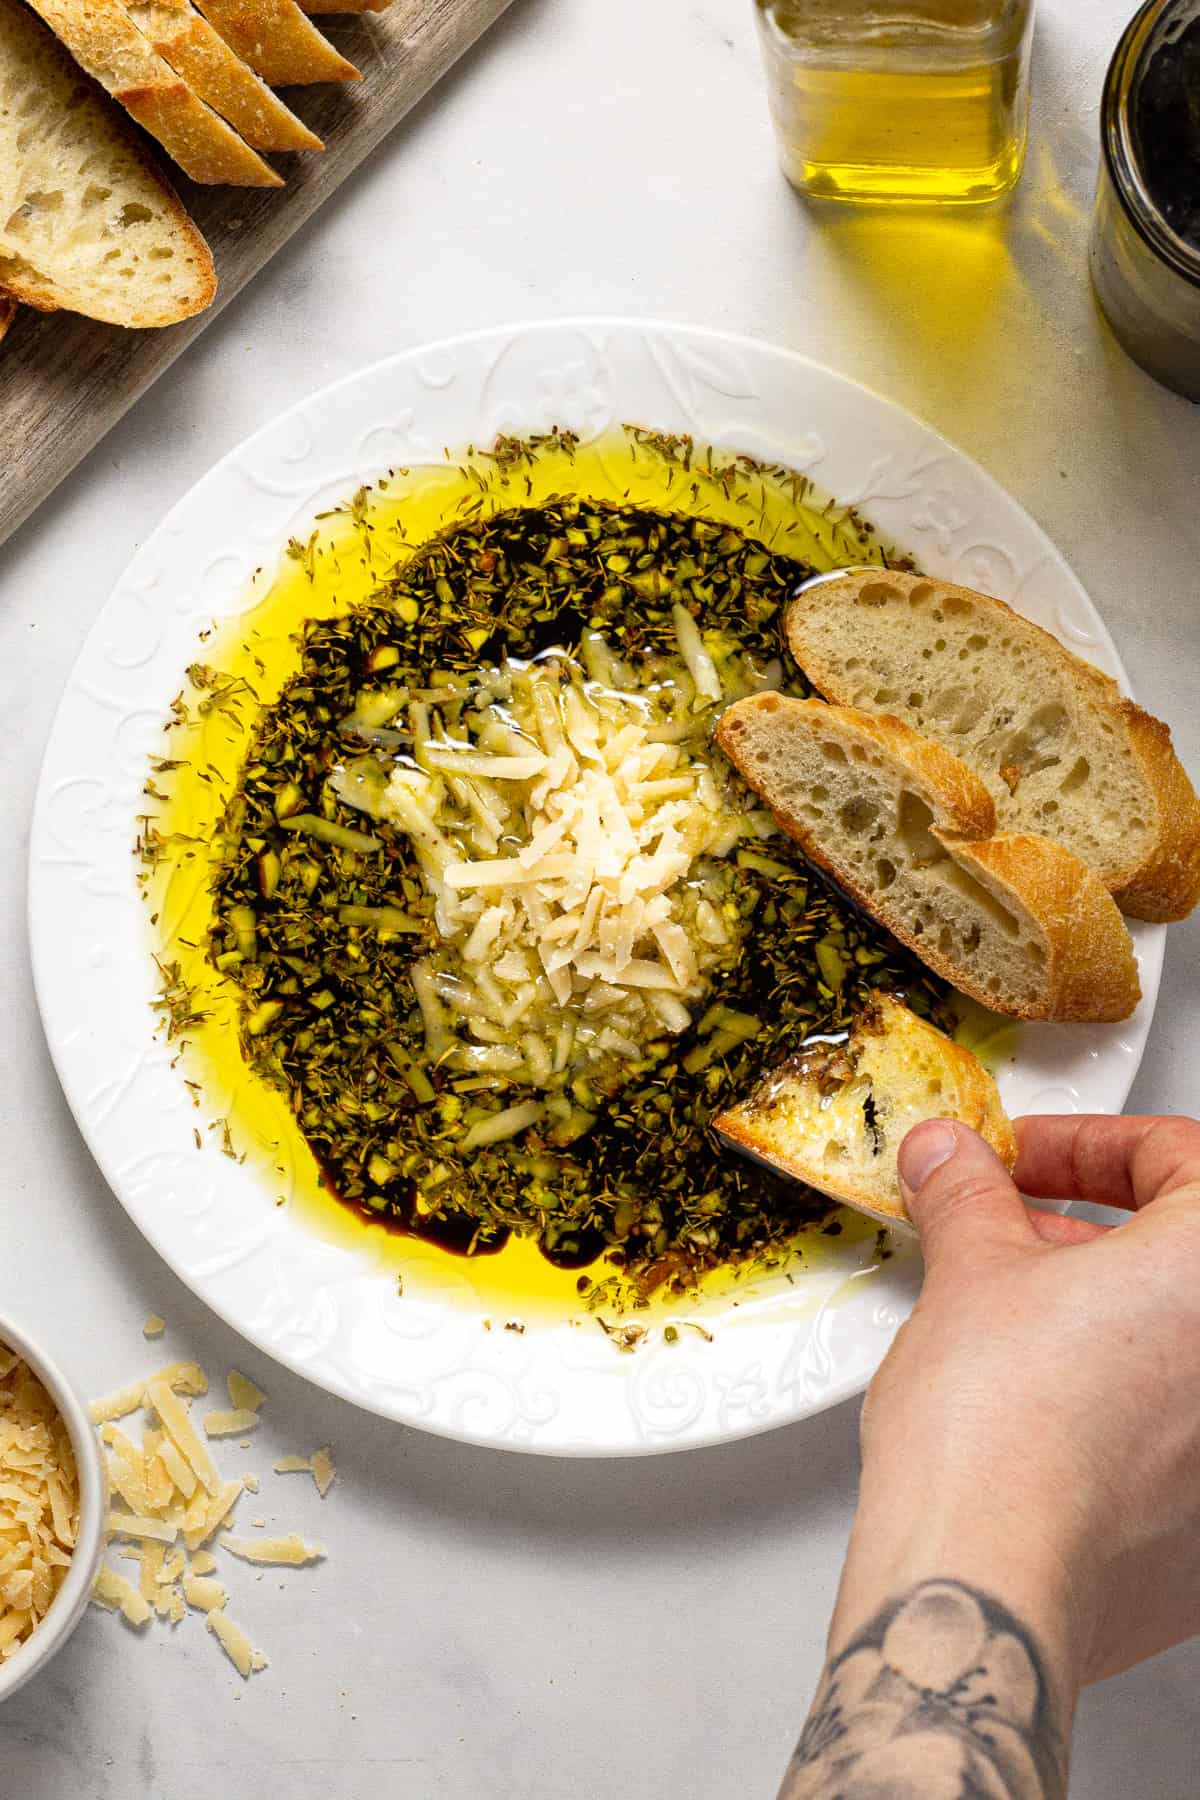 Olive Oil Bread Dip Video Midwest Foodie